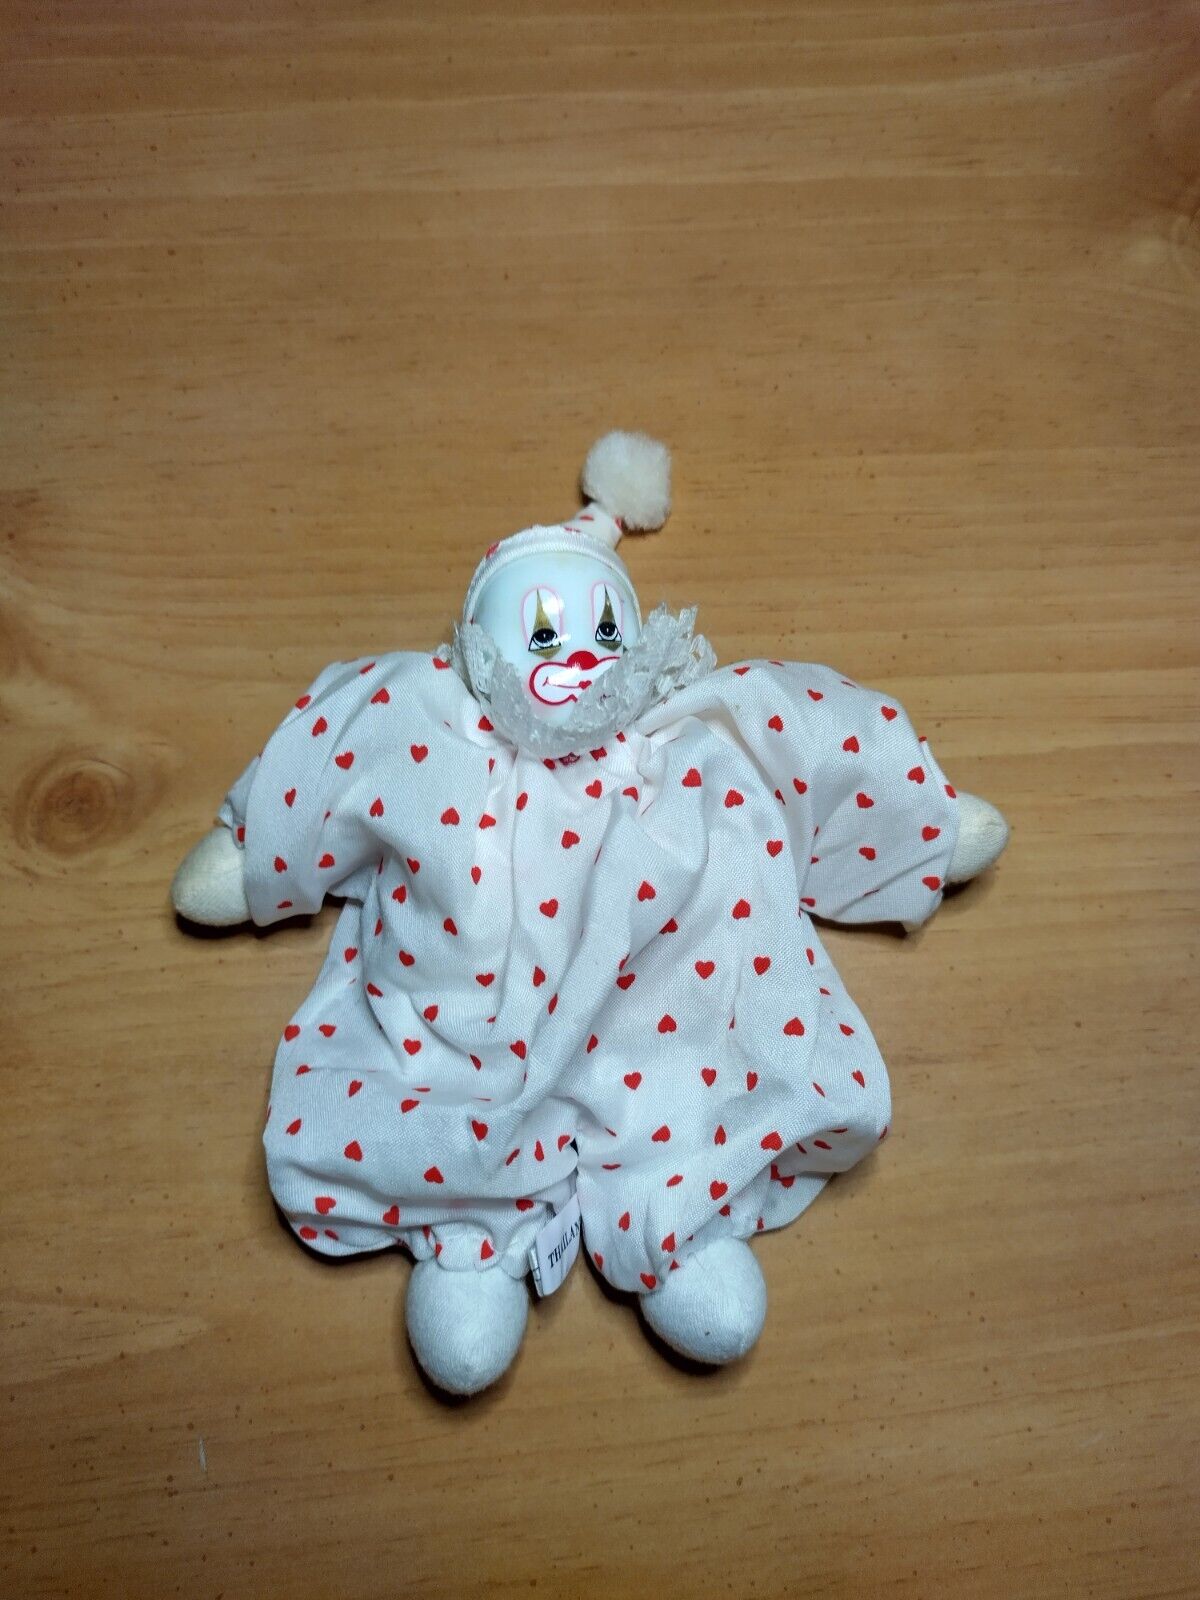 VTG Mini Porcelain Ceramic Face Clown Soft Body White W/ Red Hearts Harlequin 